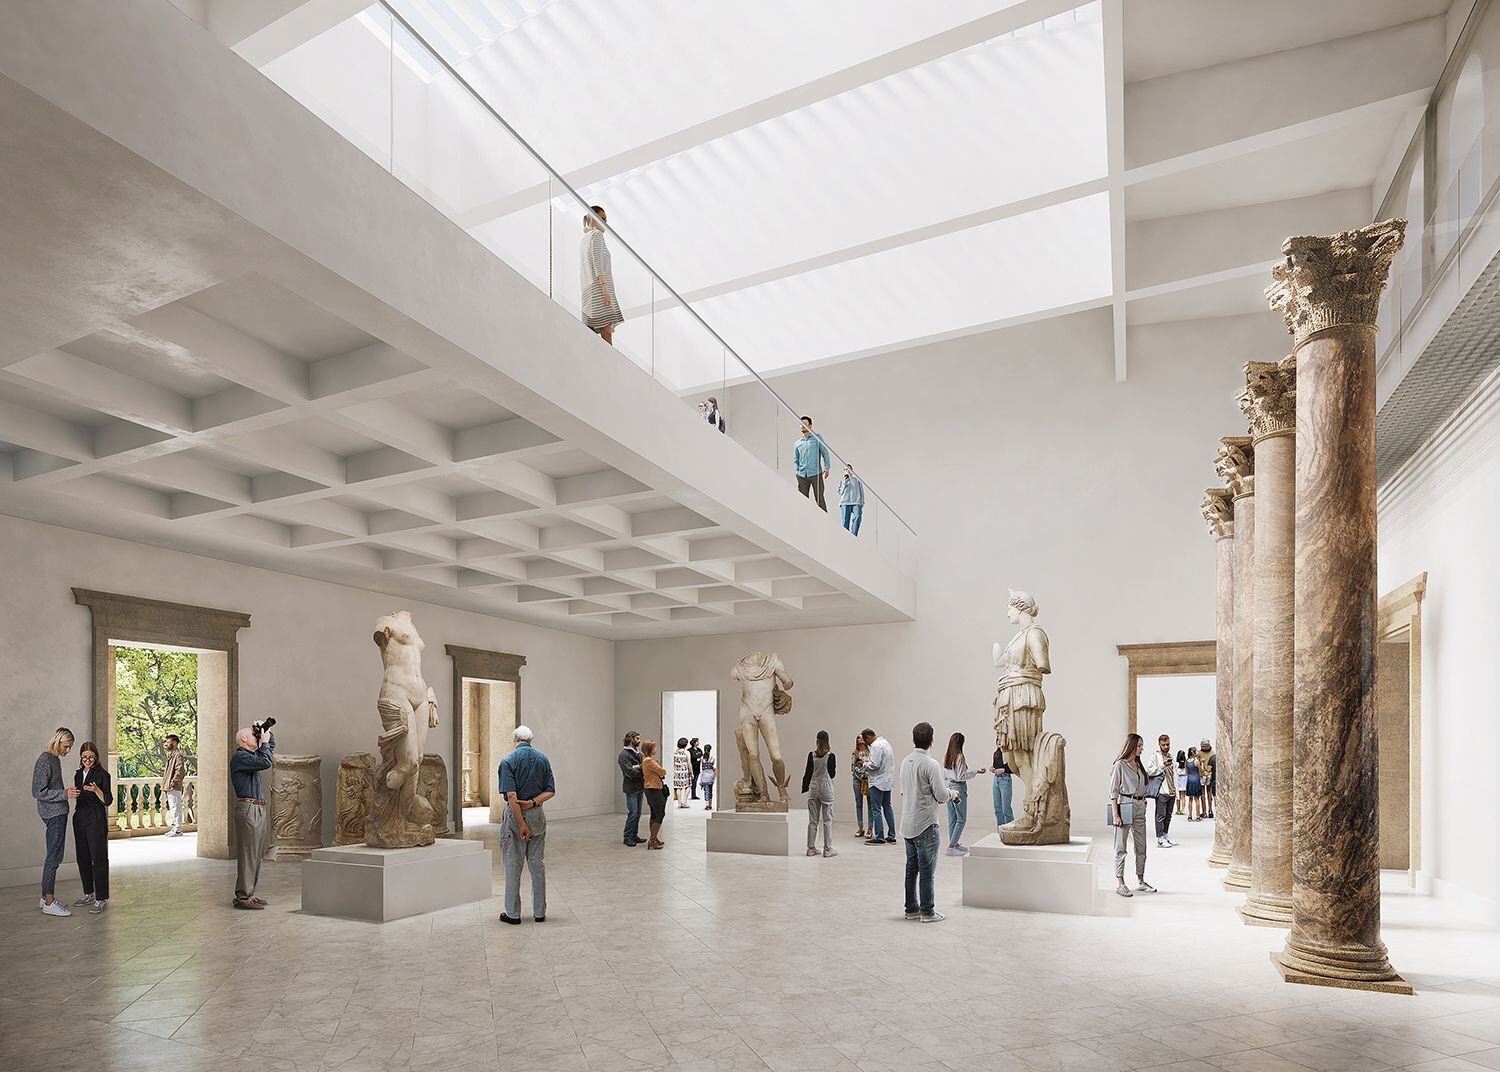 Recreación virtual de una de las salas del Museo Arqueológico de Sevilla, proyecto del arquitecto Guillermo Vázquez Consuegra.